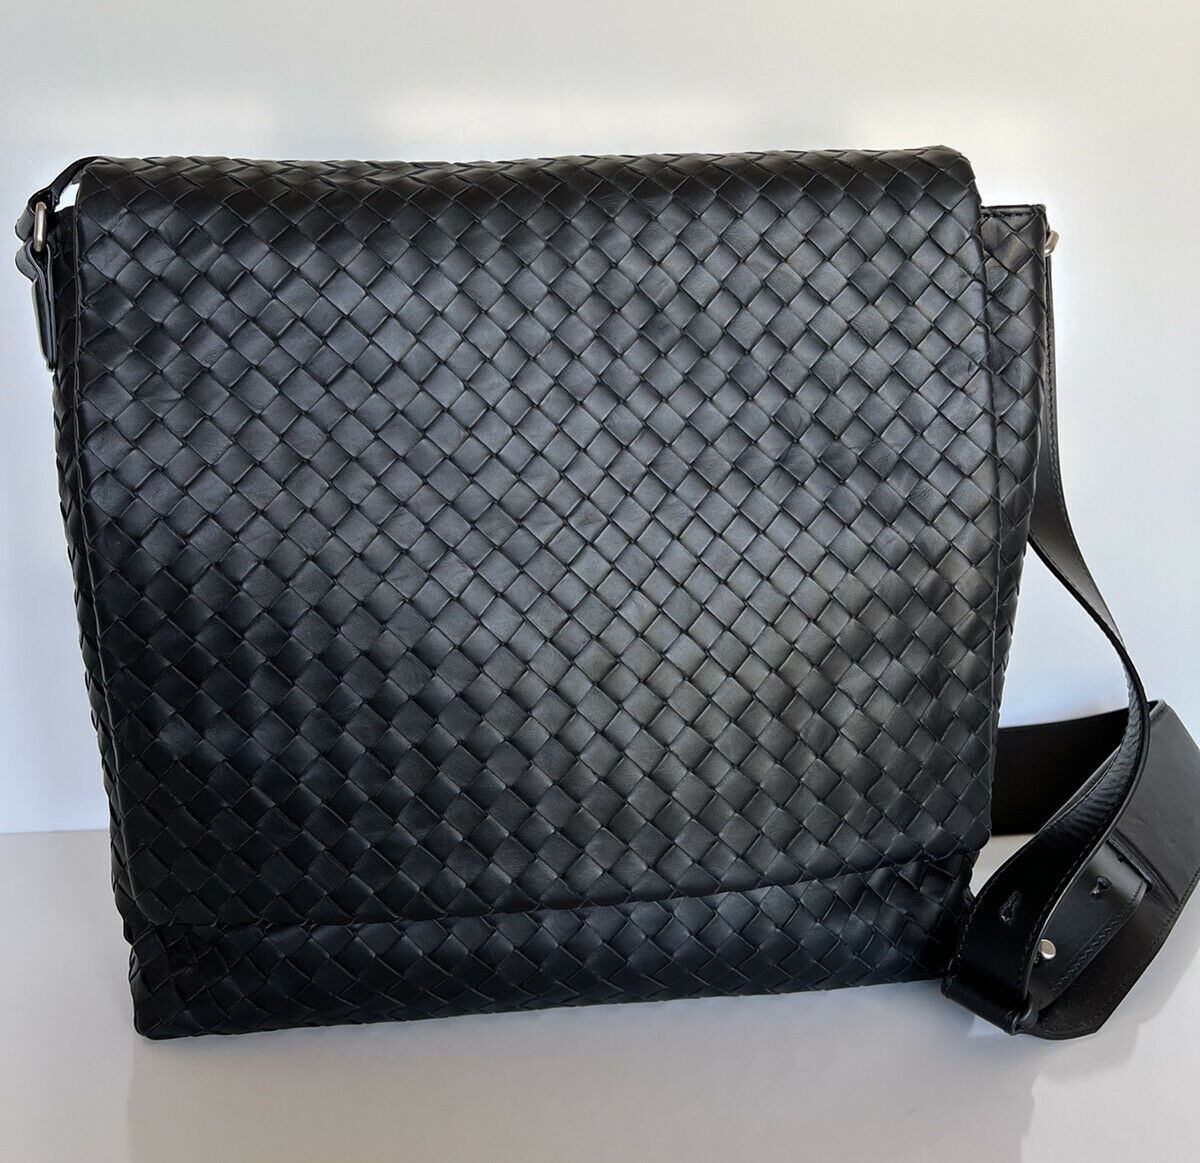 NWT $3000 Черная кожаная сумка через плечо Bottega Veneta Intrecciato Италия 577538 